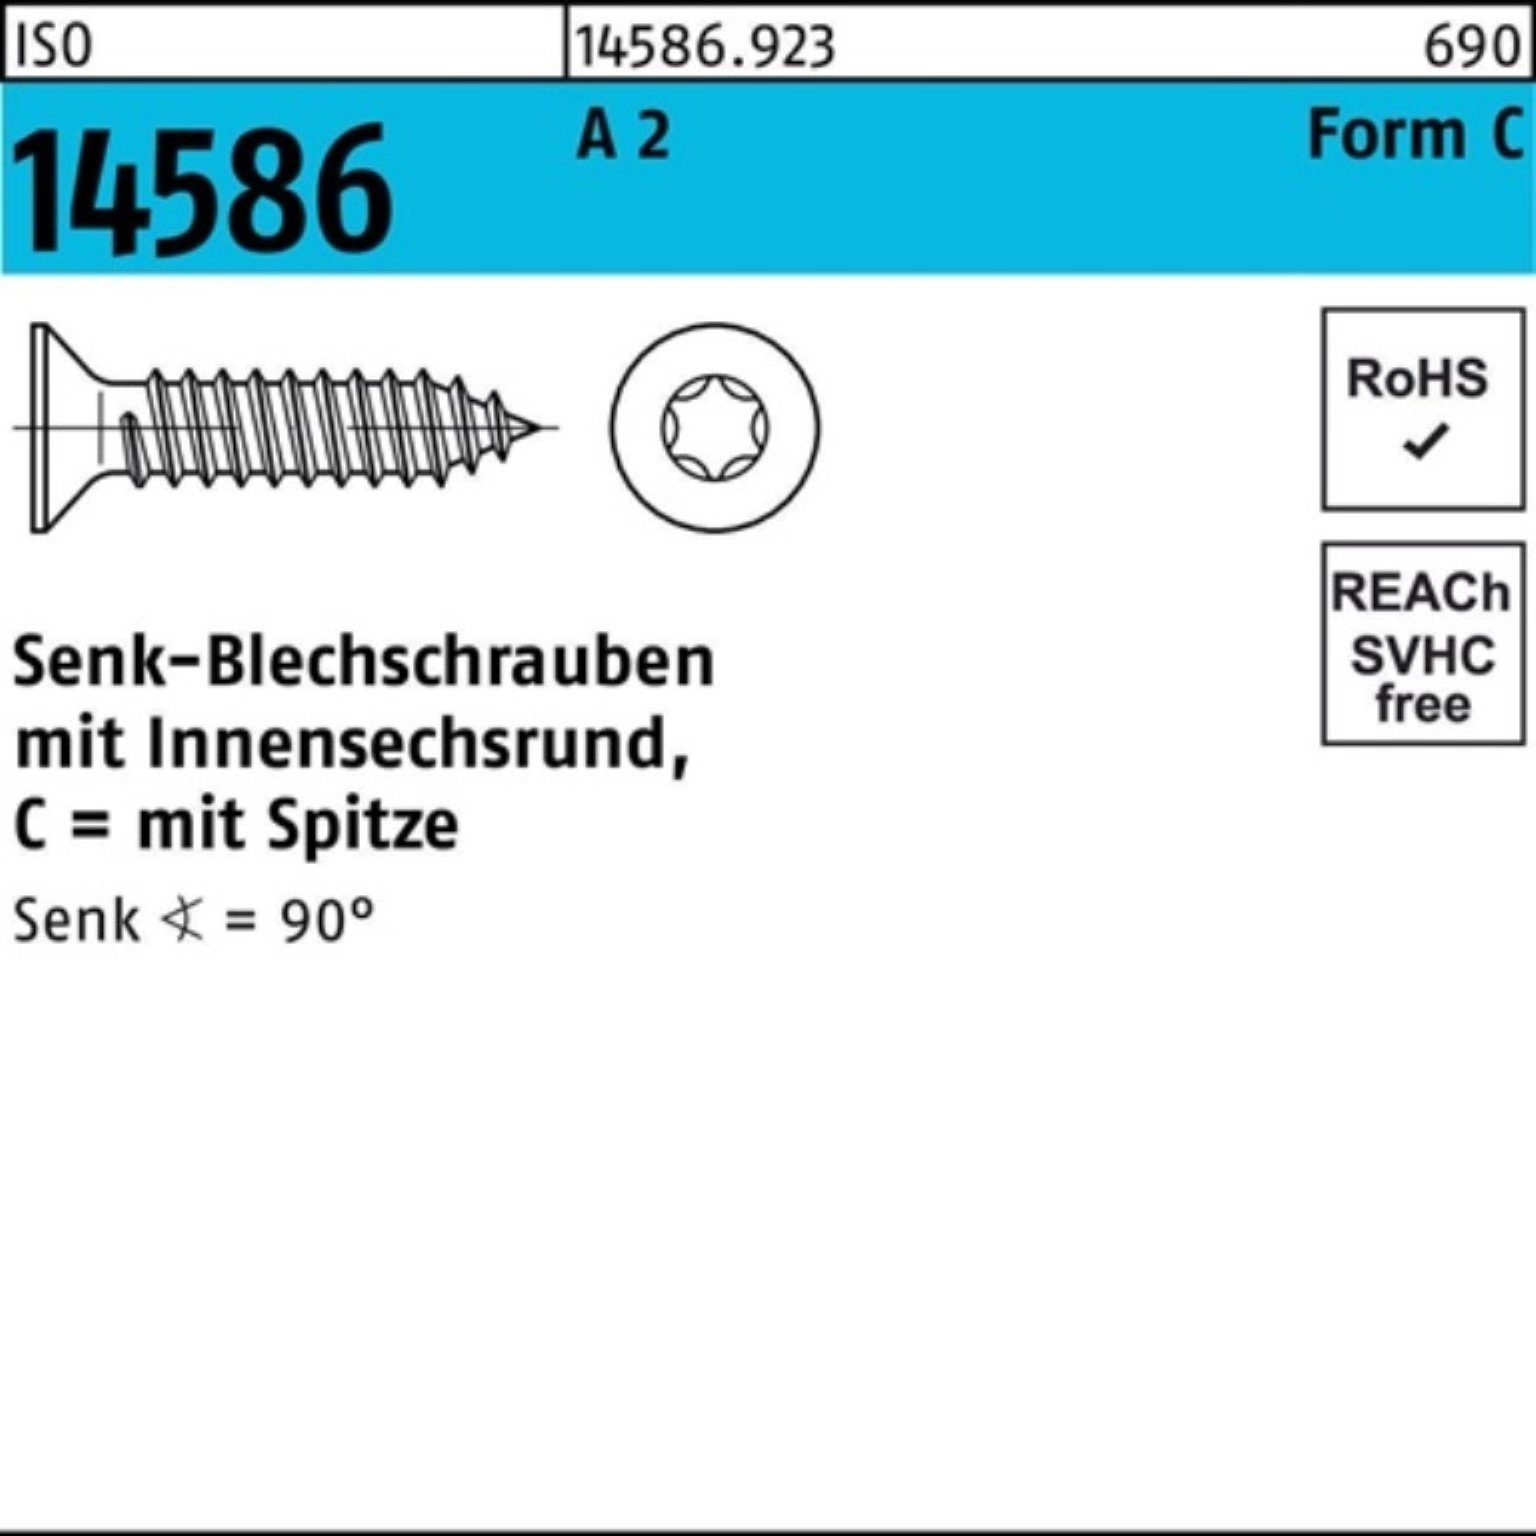 Reyher Schraube 14586 2 T15 -C 32 Pack 3,5x ISO ISR/Spitze Senkblechschraube 1000er A